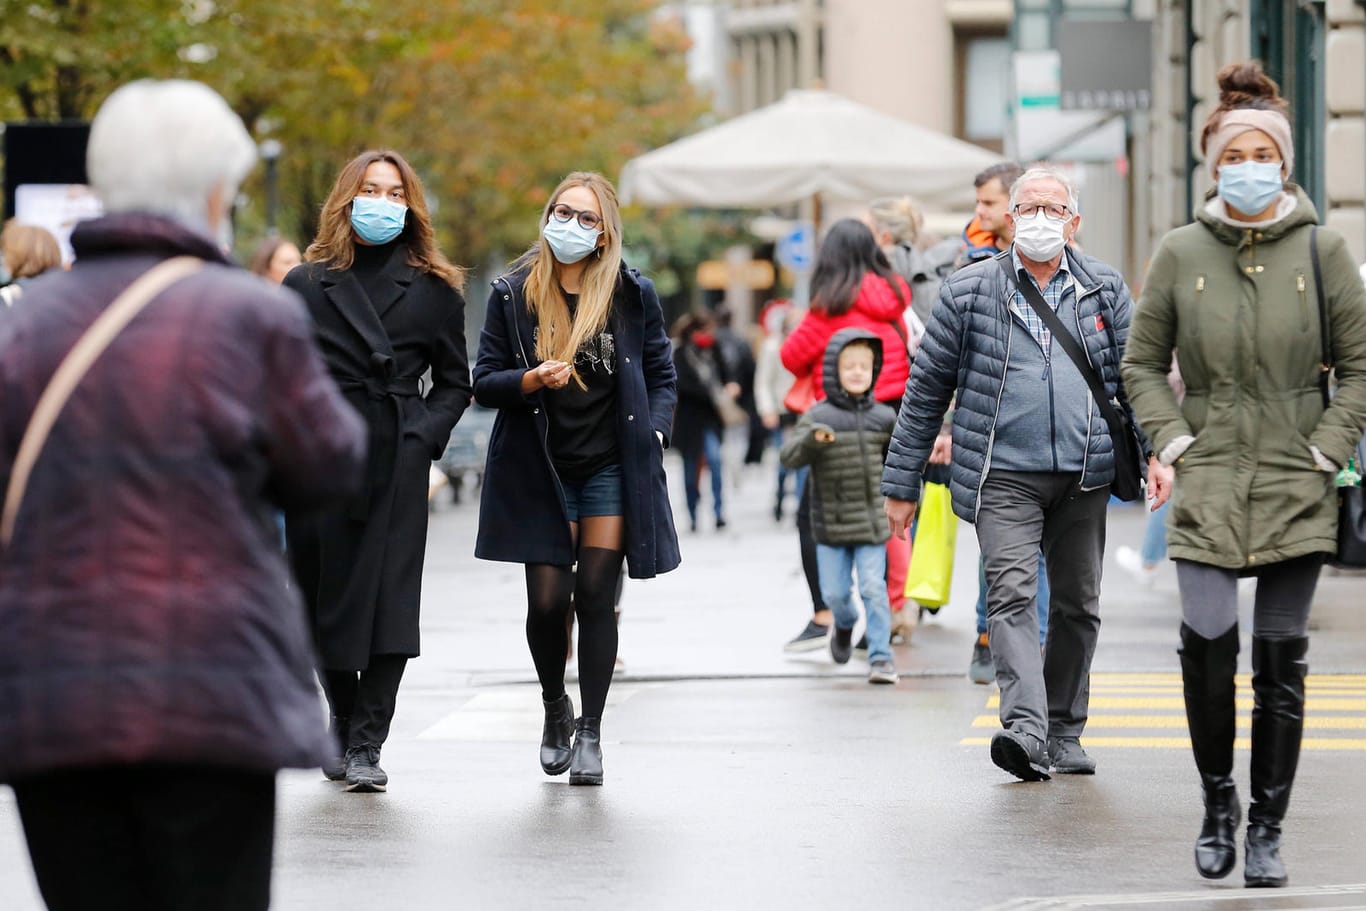 Zürich: Passanten mit Schutzmasken unterwegs an der Bahnhofstrasse. Die Schweiz hat nach einem heftigen Anstieg der Infektionszahlen strengere Regeln erlassen.